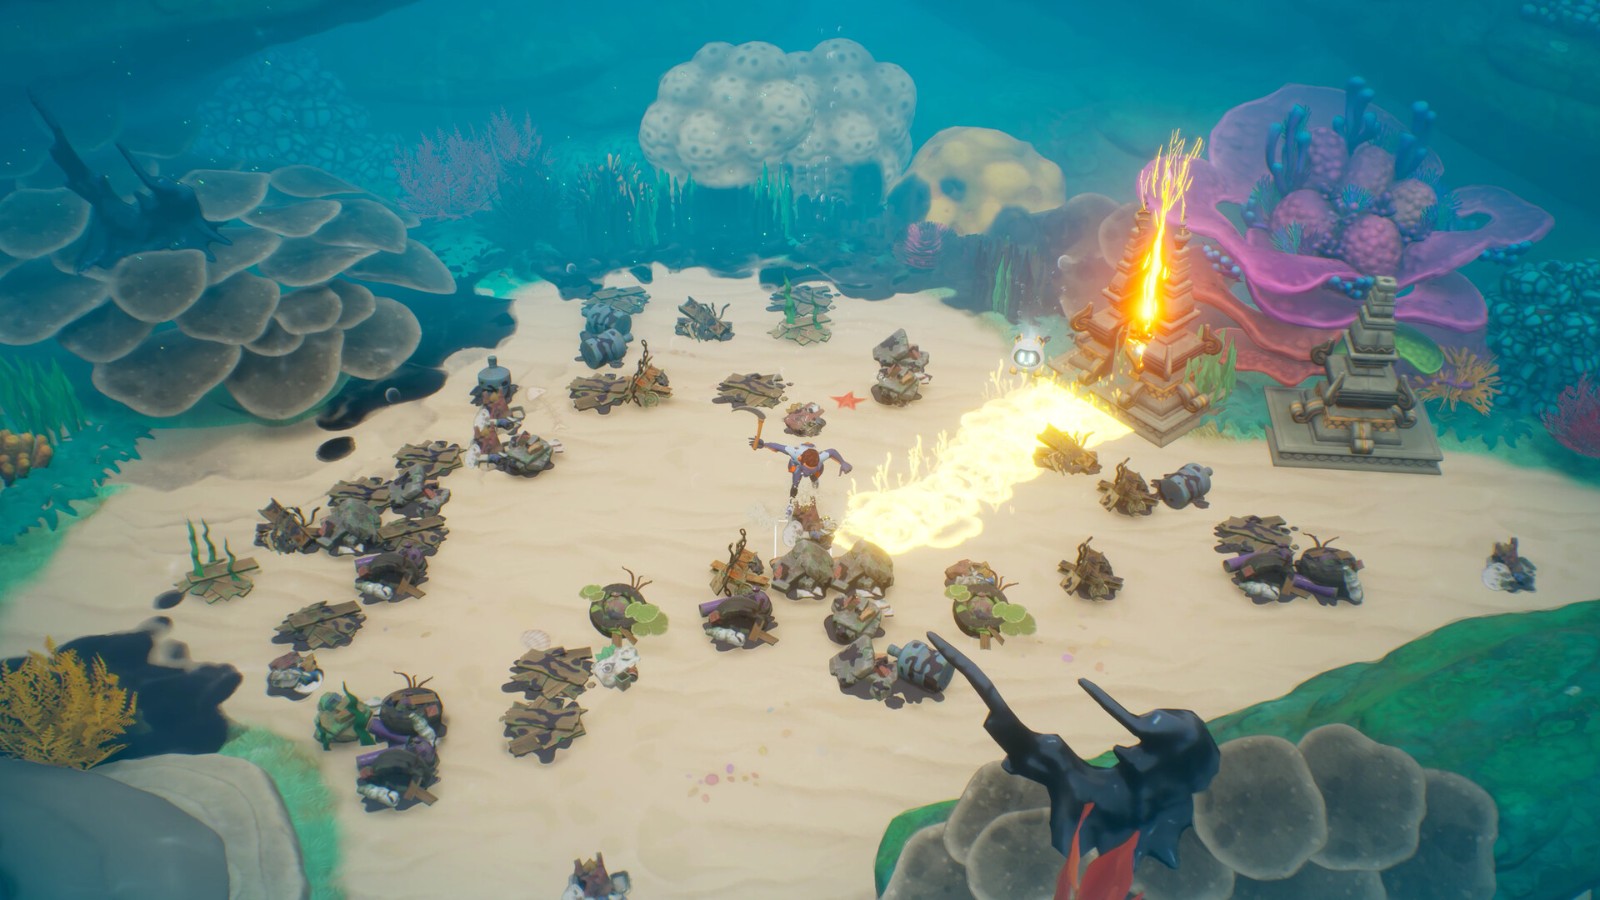 农场休闲模拟游戏《珊瑚岛》10月11日登陆Steam抢先体验 二次世界 第4张